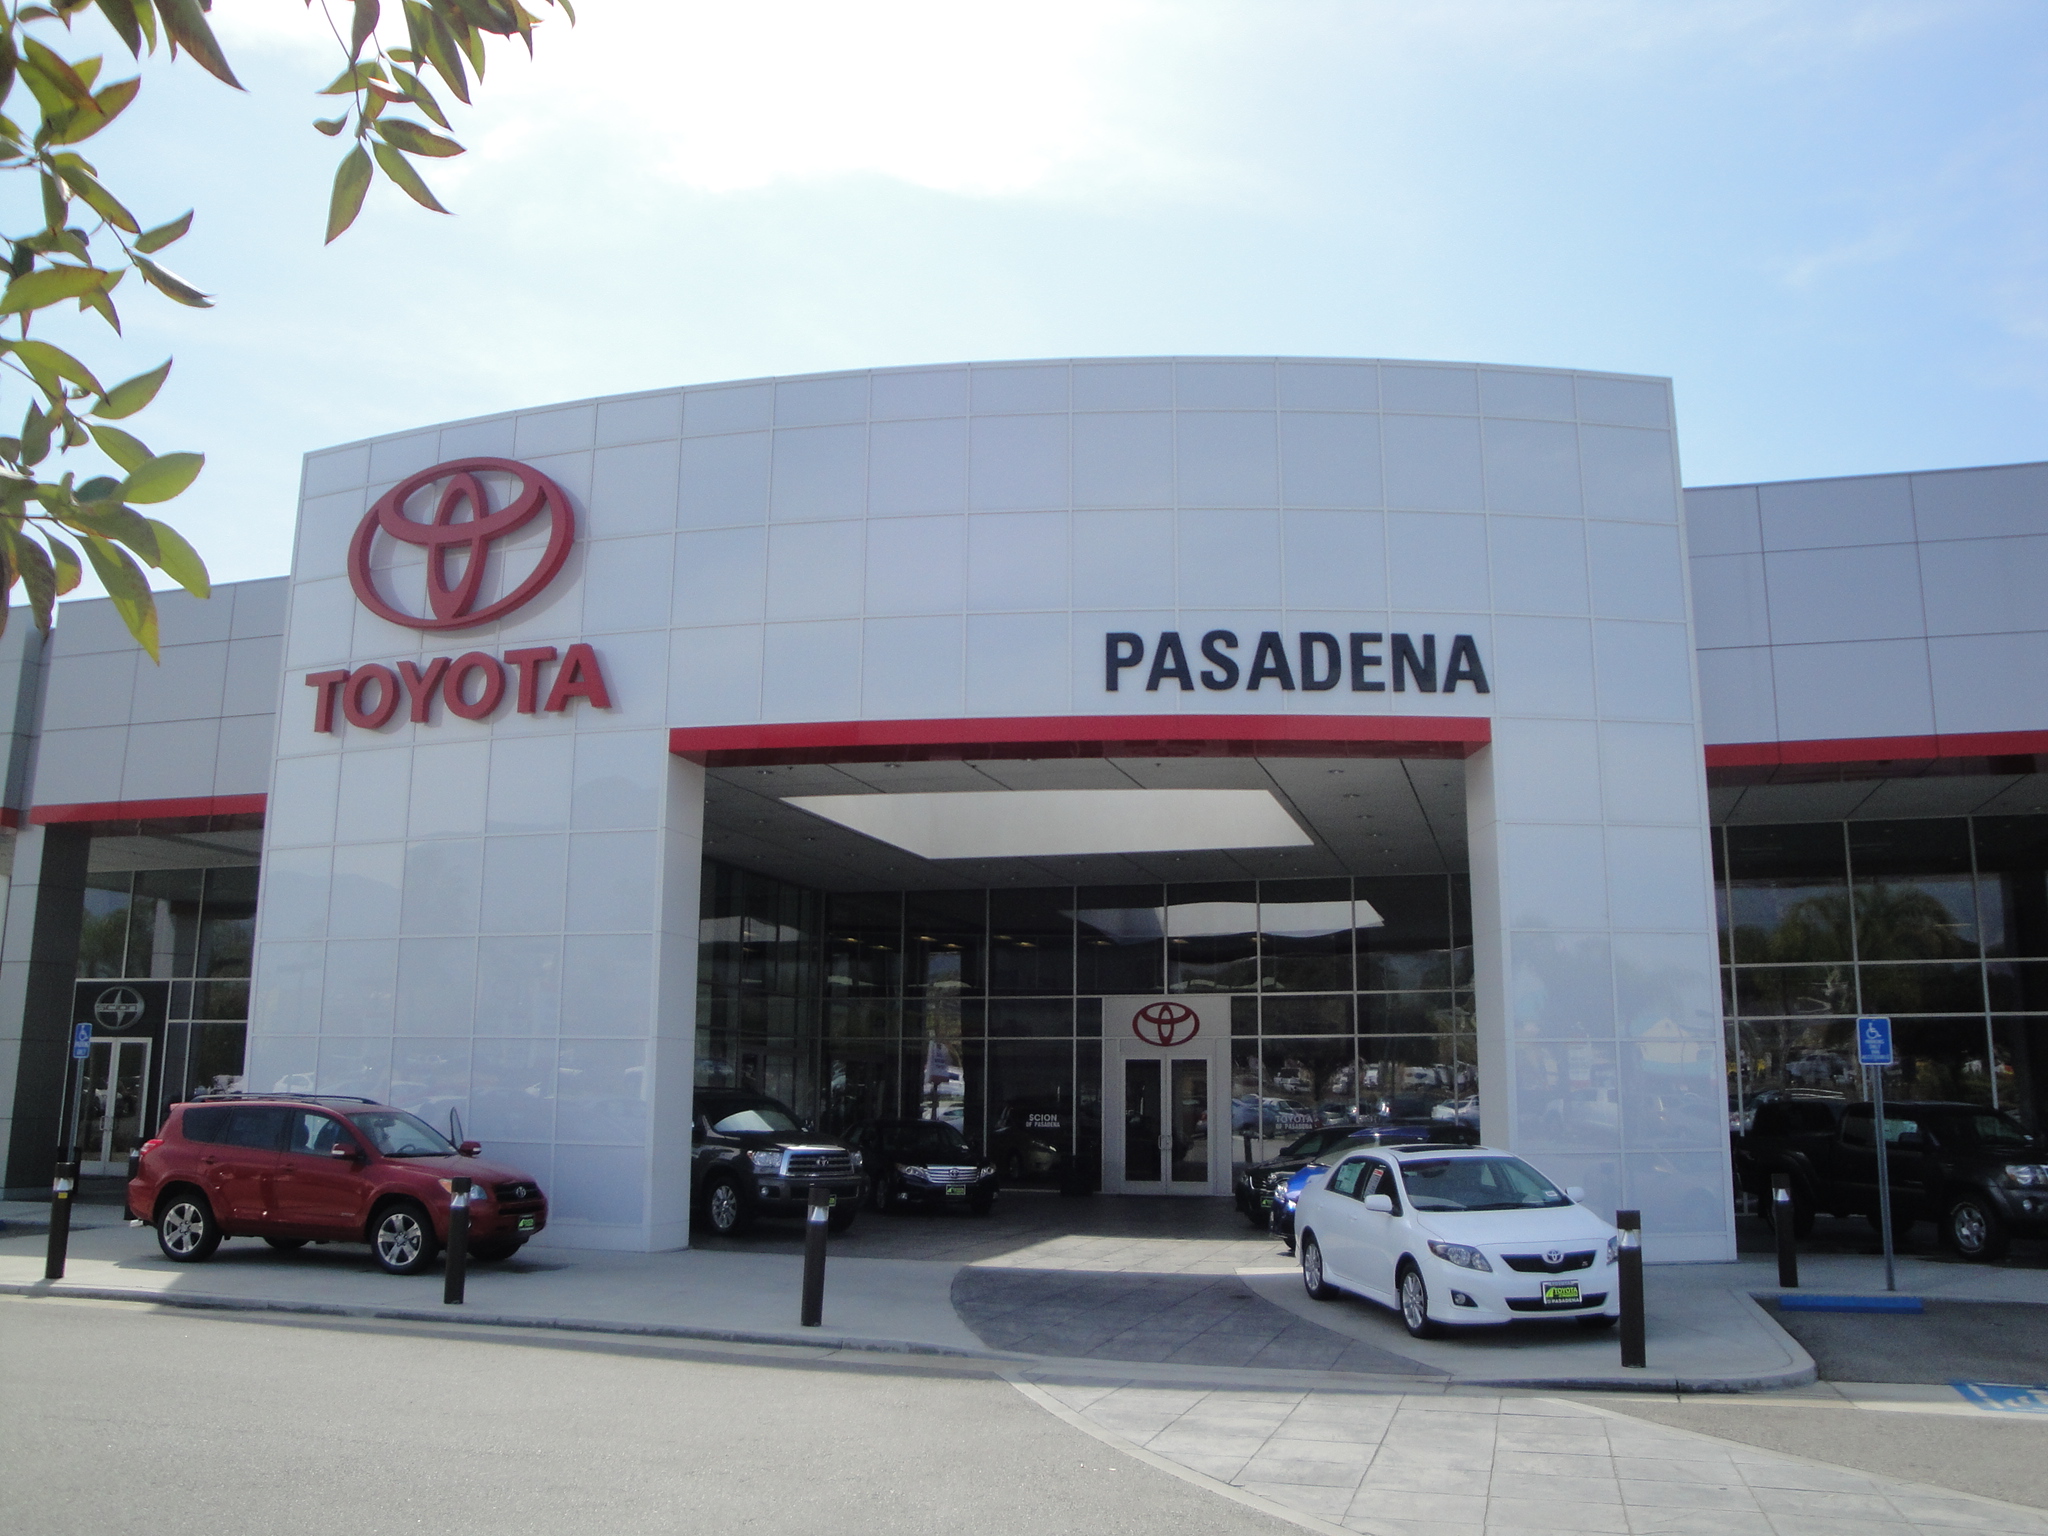 Toyota Pasadena Pasadena (626)795-9787